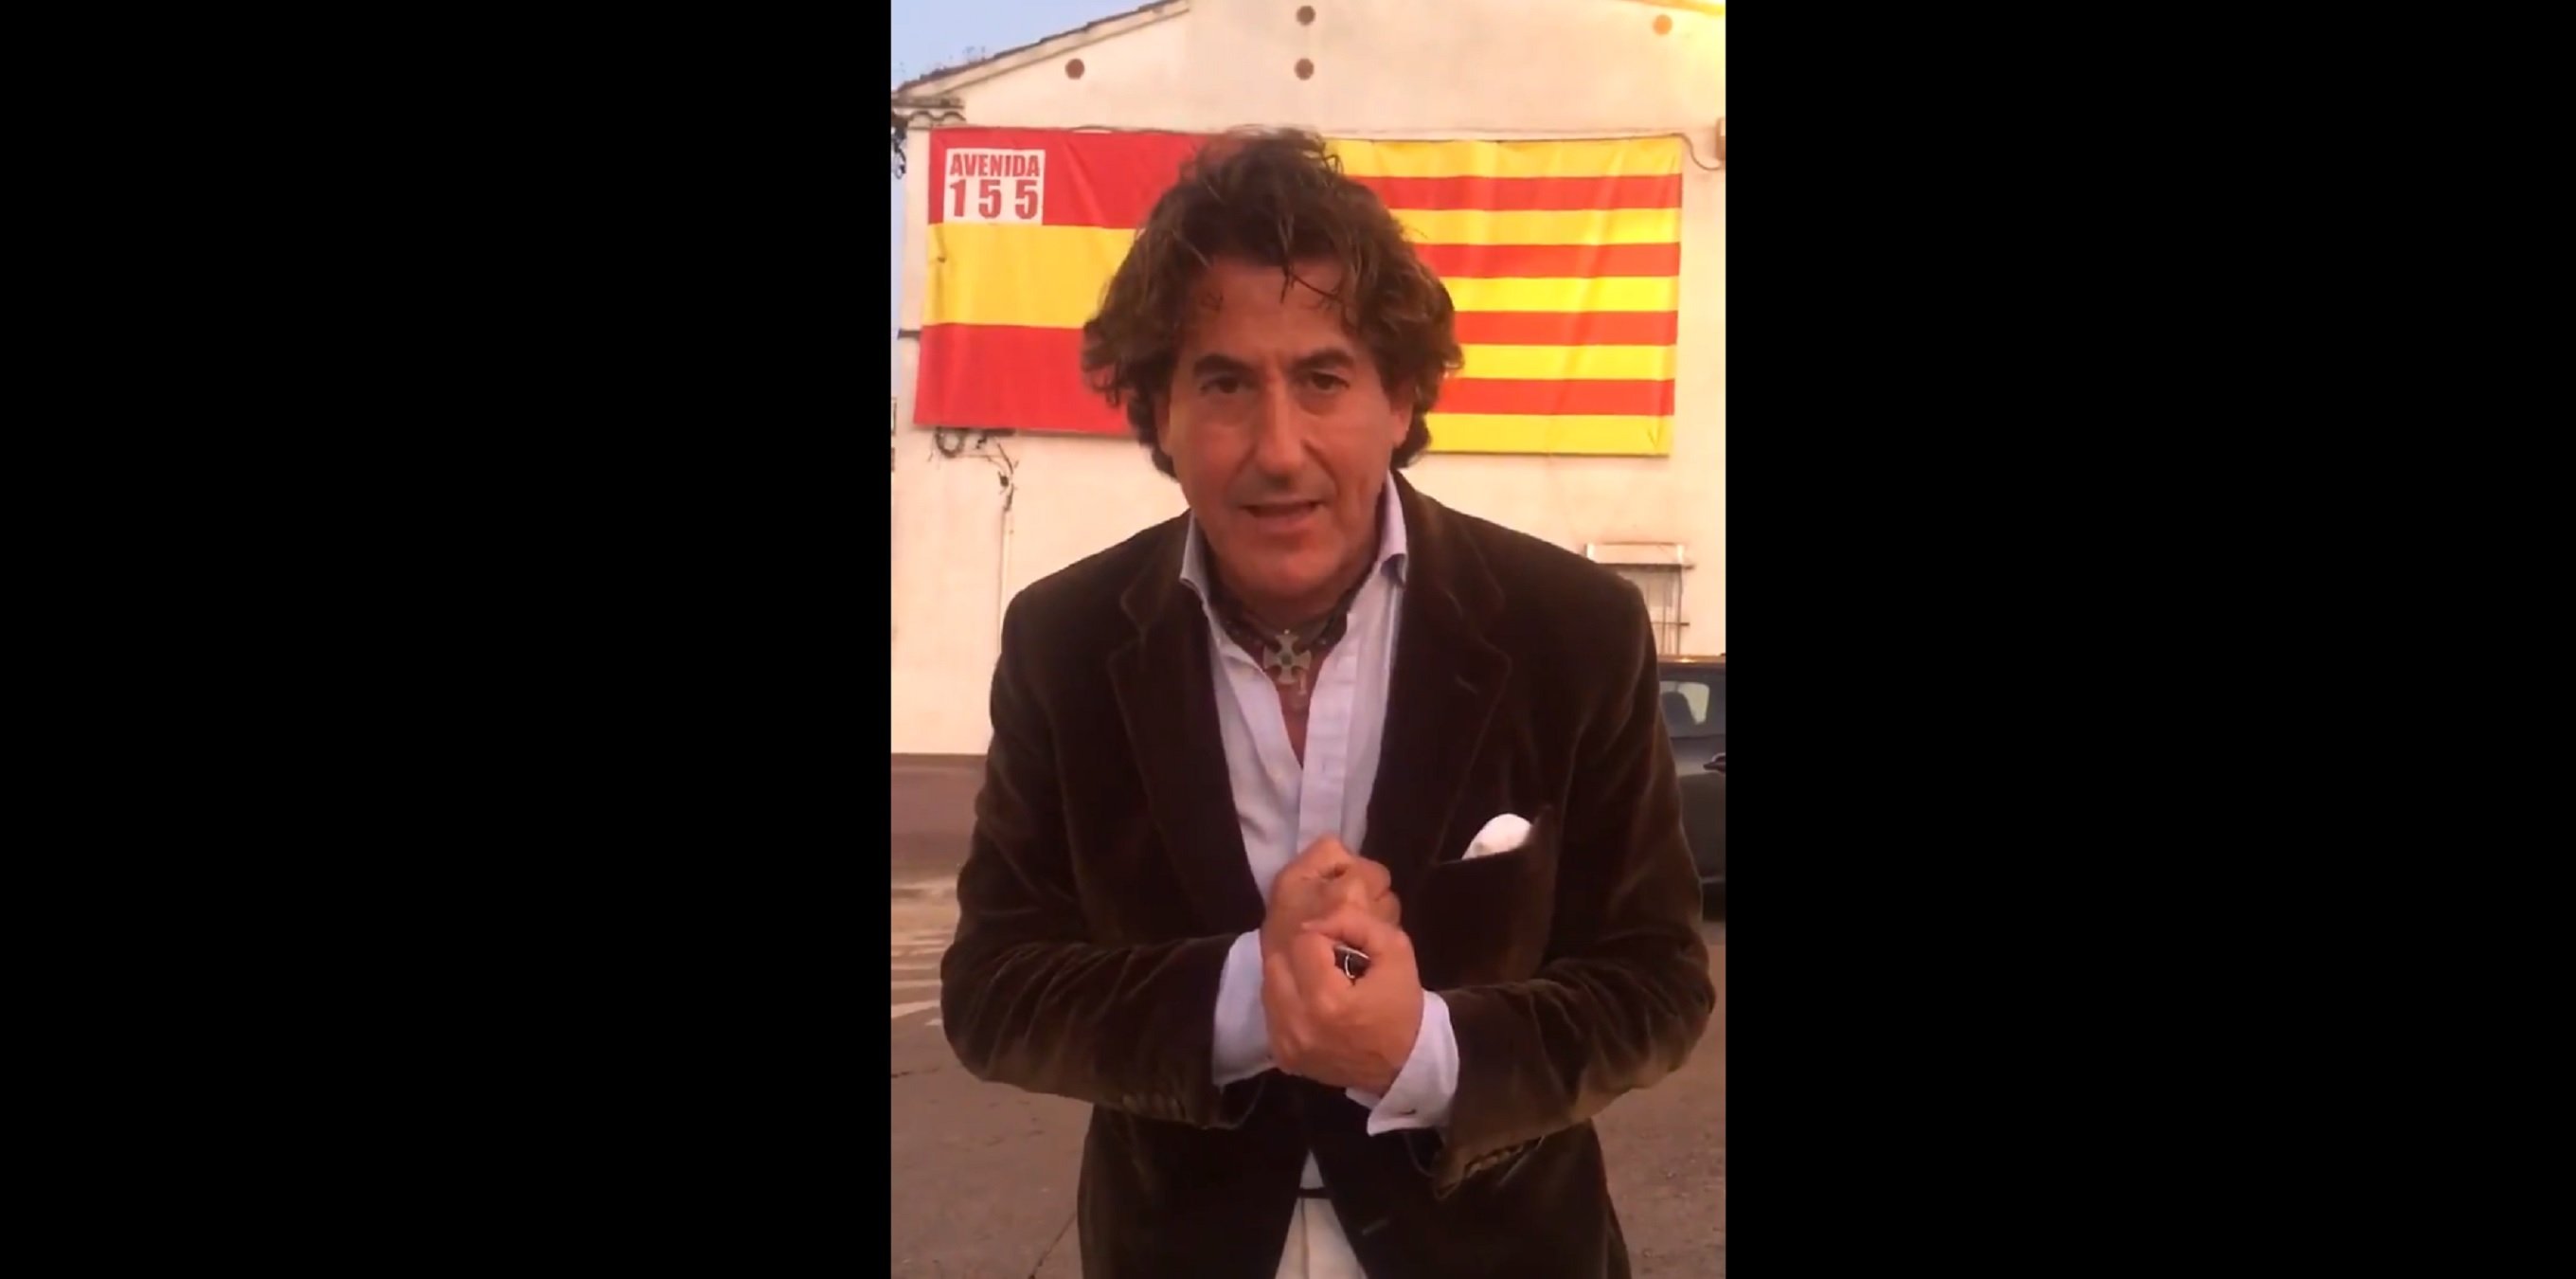 Marichalar sobre sus disturbios en Girona: "A esa gentucilla los perdono"